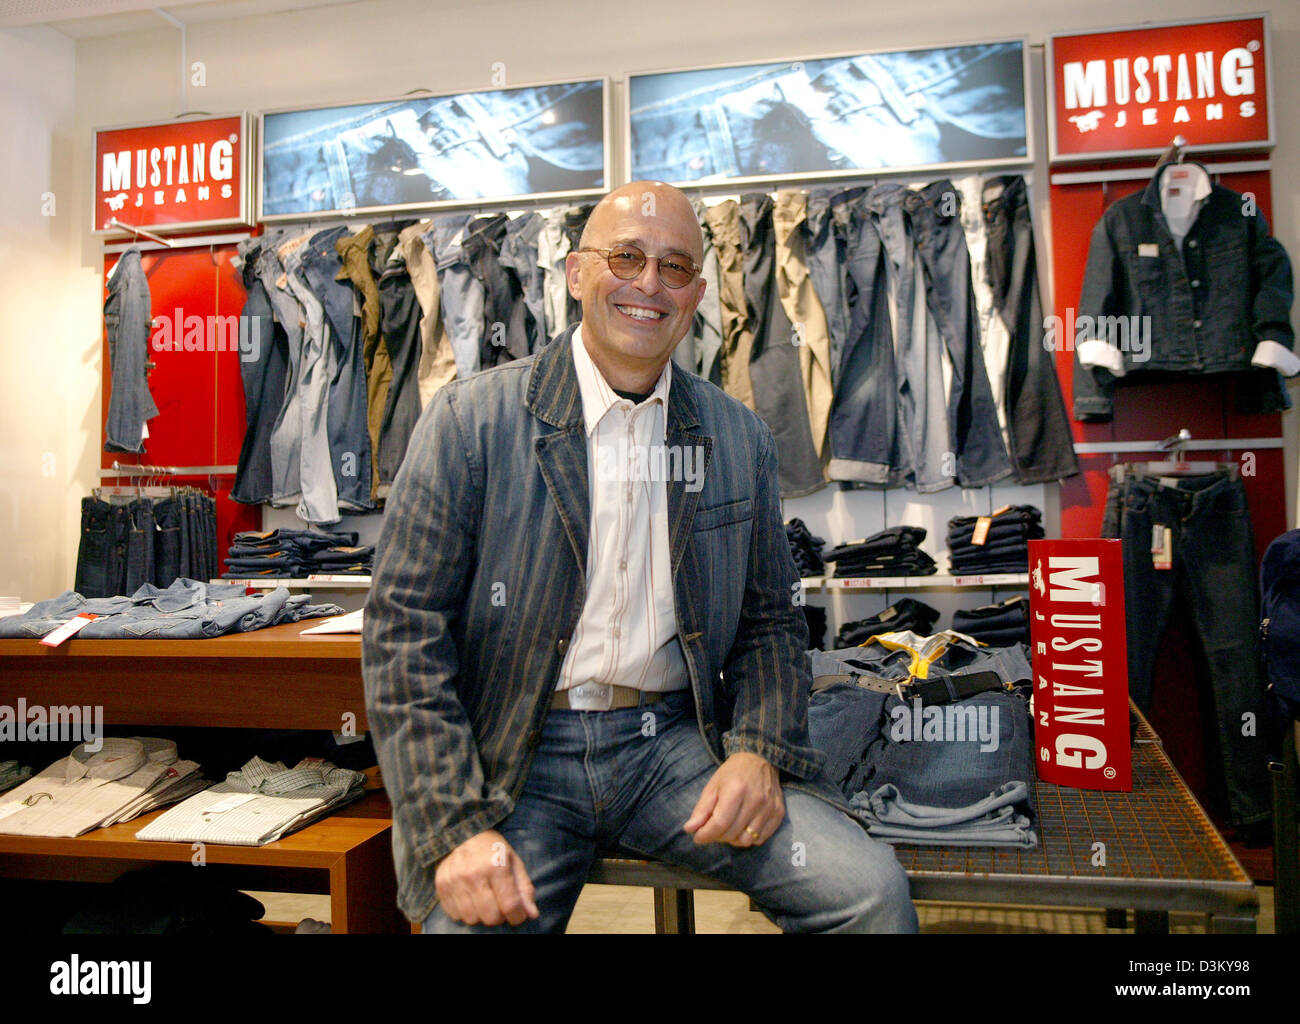 Dpa) - archivo Heiner Sefranek, CEO de comercio minorista de ropa Mustang,  está sonriendo entre estanterías con ropa de la marca denim Mustang en la  sede central de la empresa en Kuenzelsau,